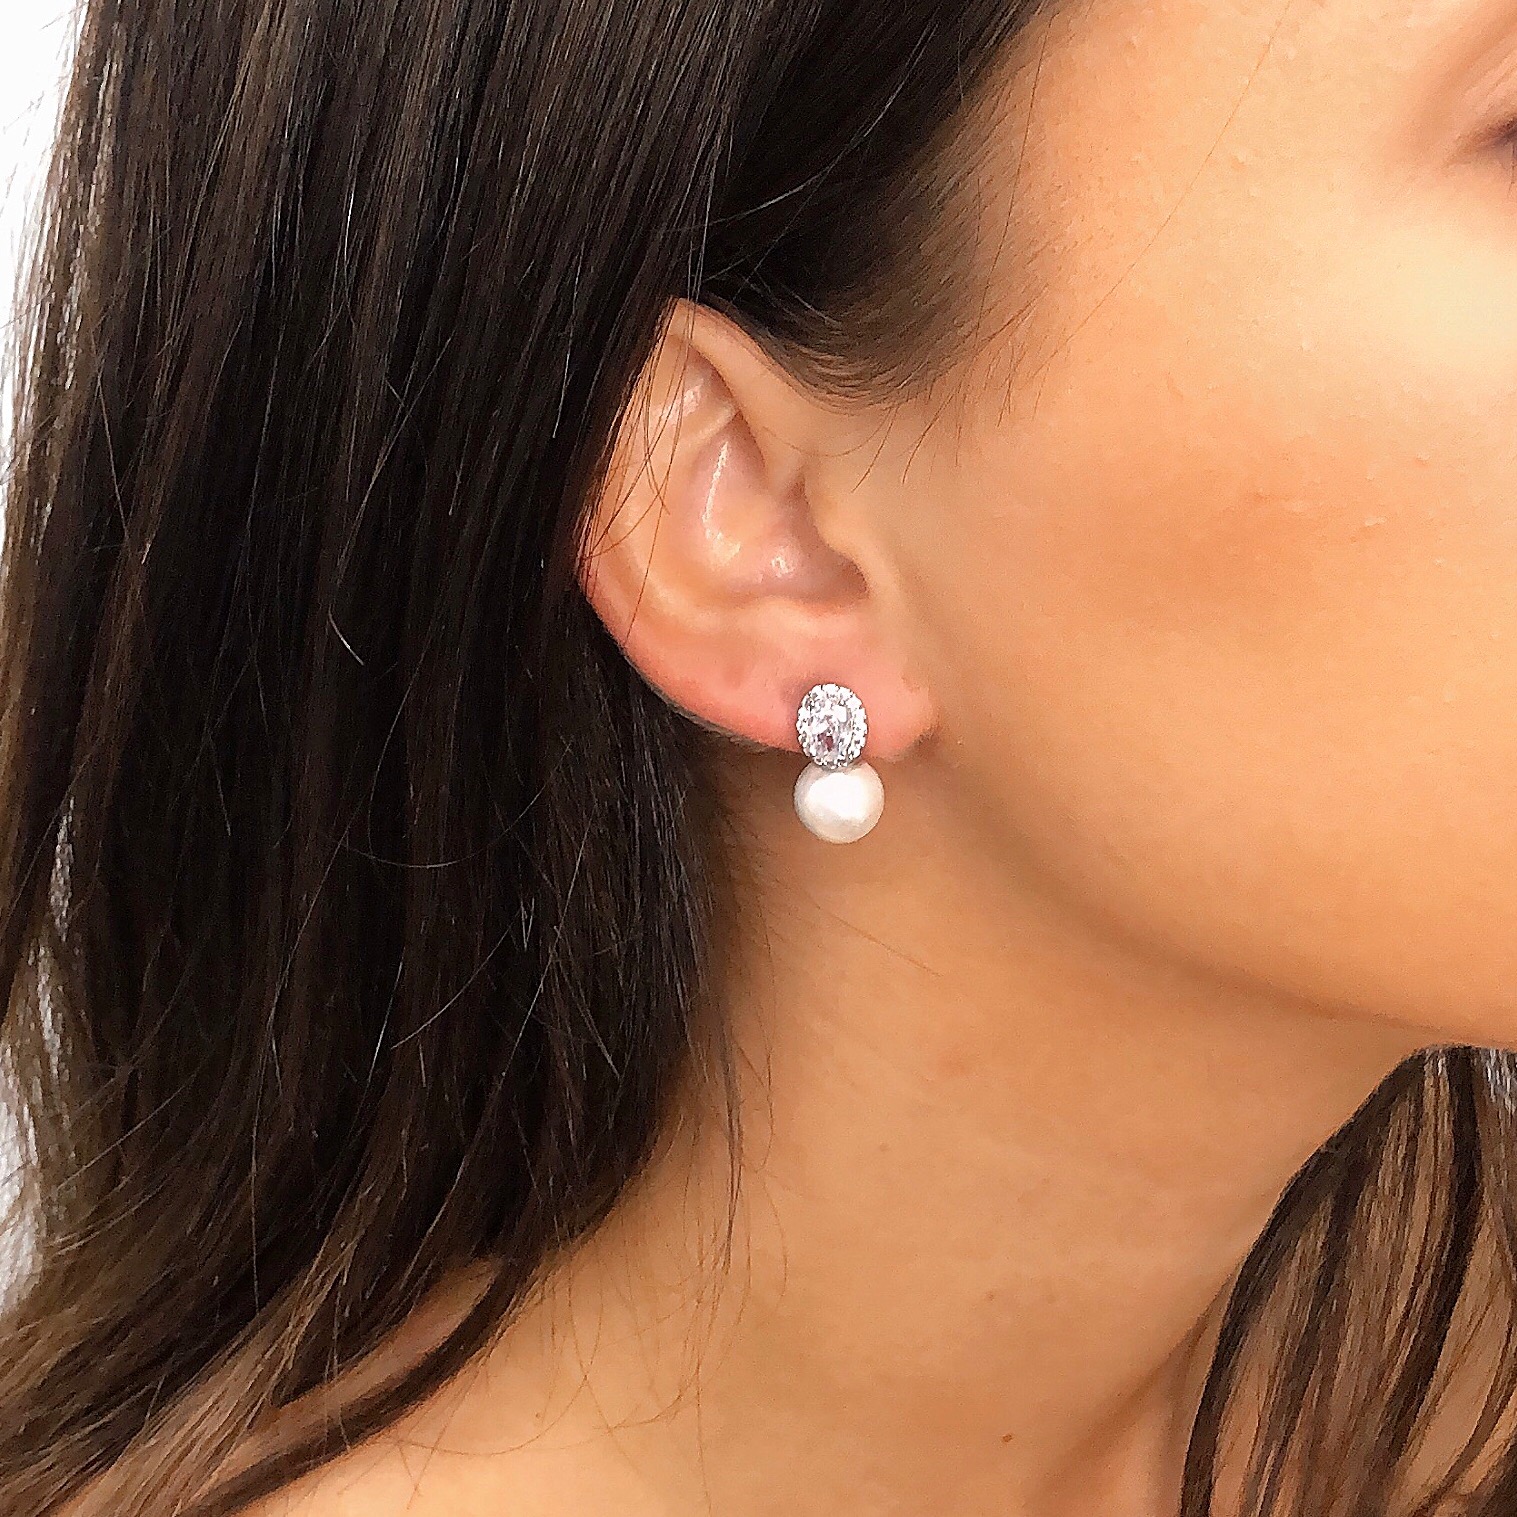 White pearl stud earrings|Malia|Jeanette Maree|Shop Online Now